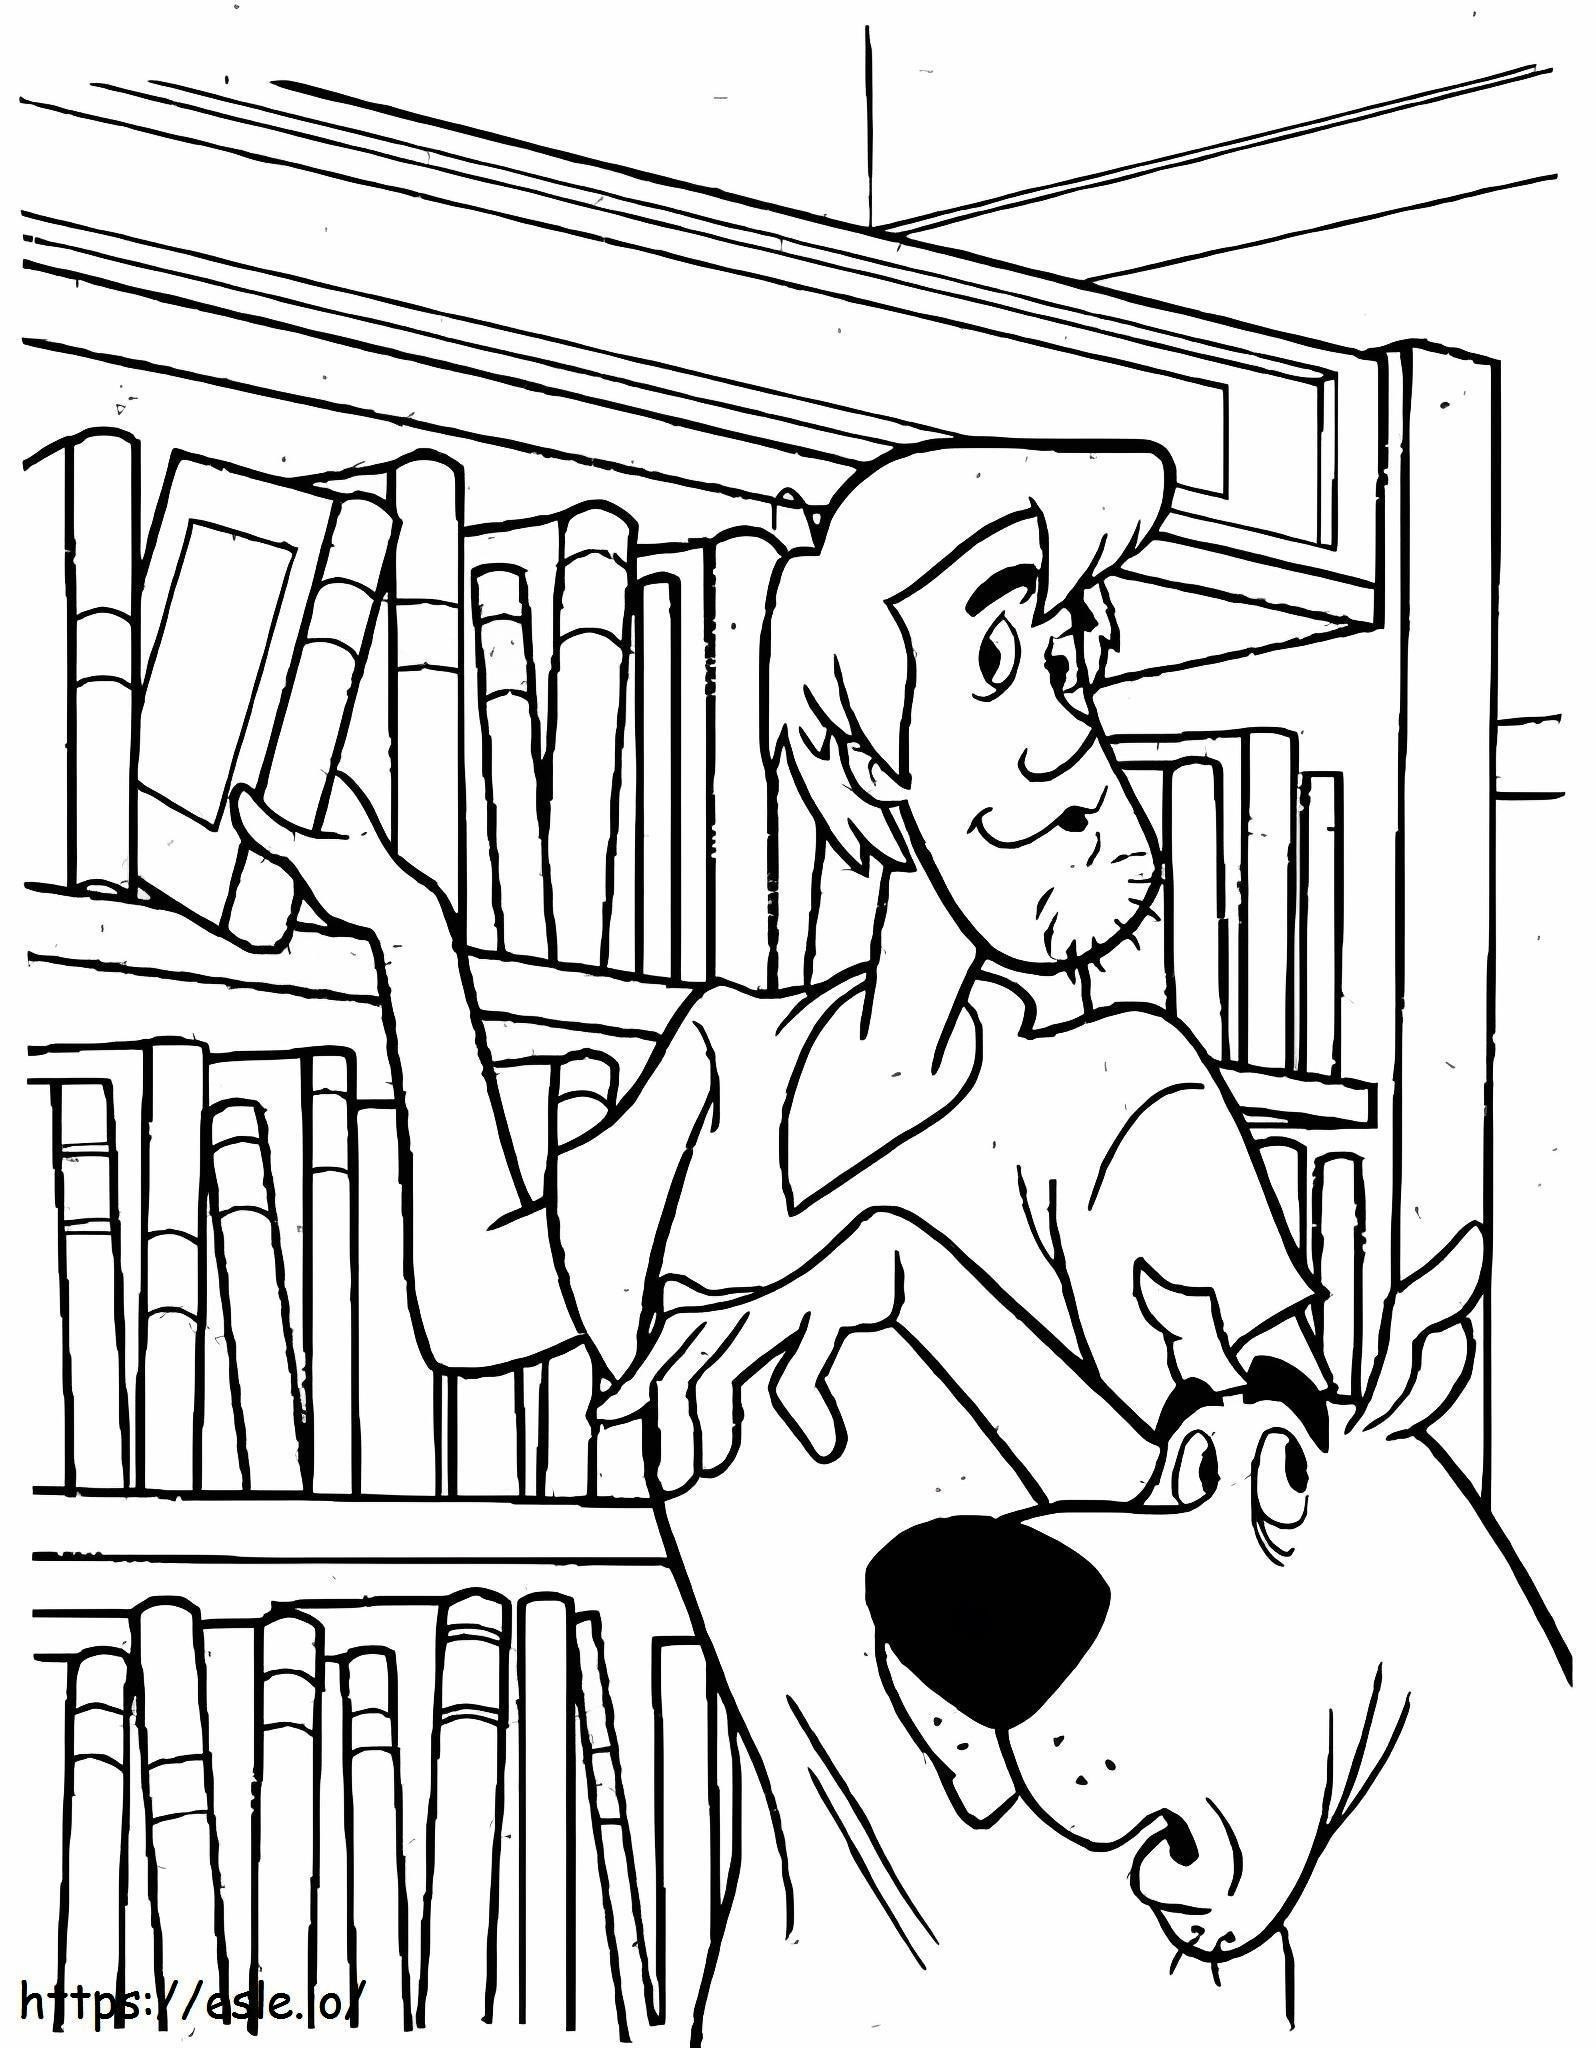 Shaggy en Scooby Doo in de boekwinkel kleurplaat kleurplaat